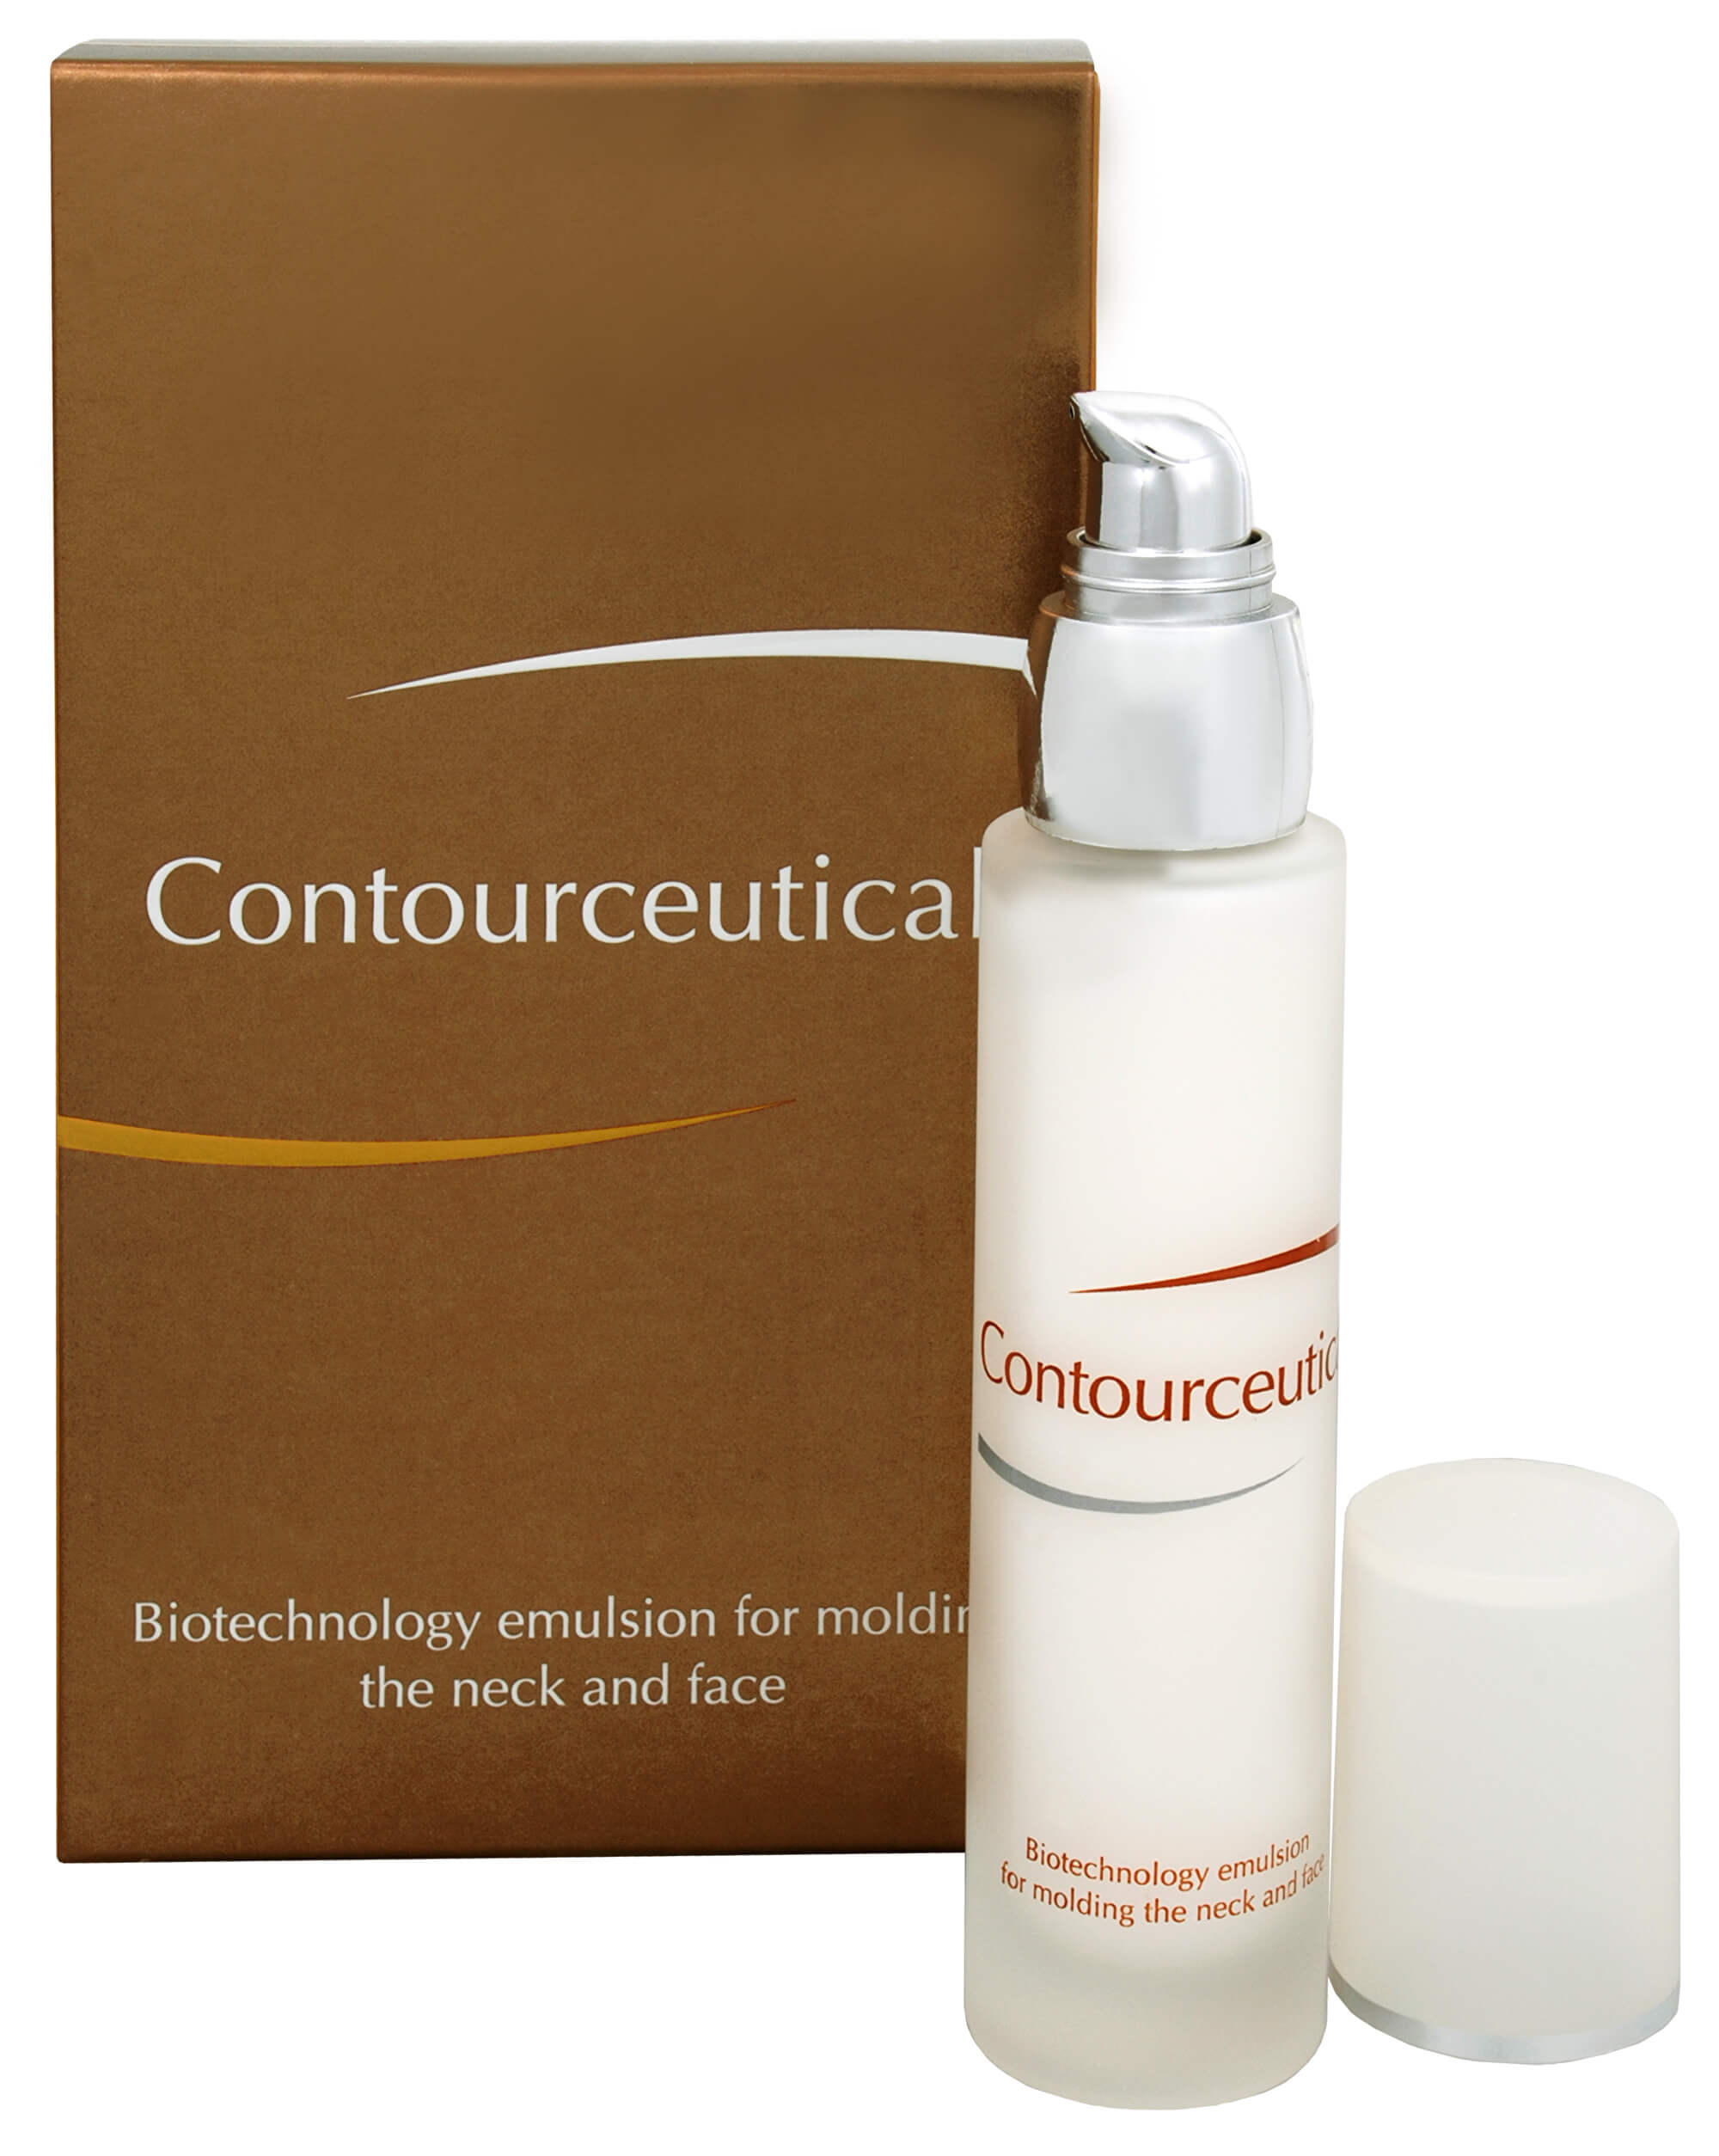 Contourceutical - biotechnologická emulze na formování krku a tváře 50 ml